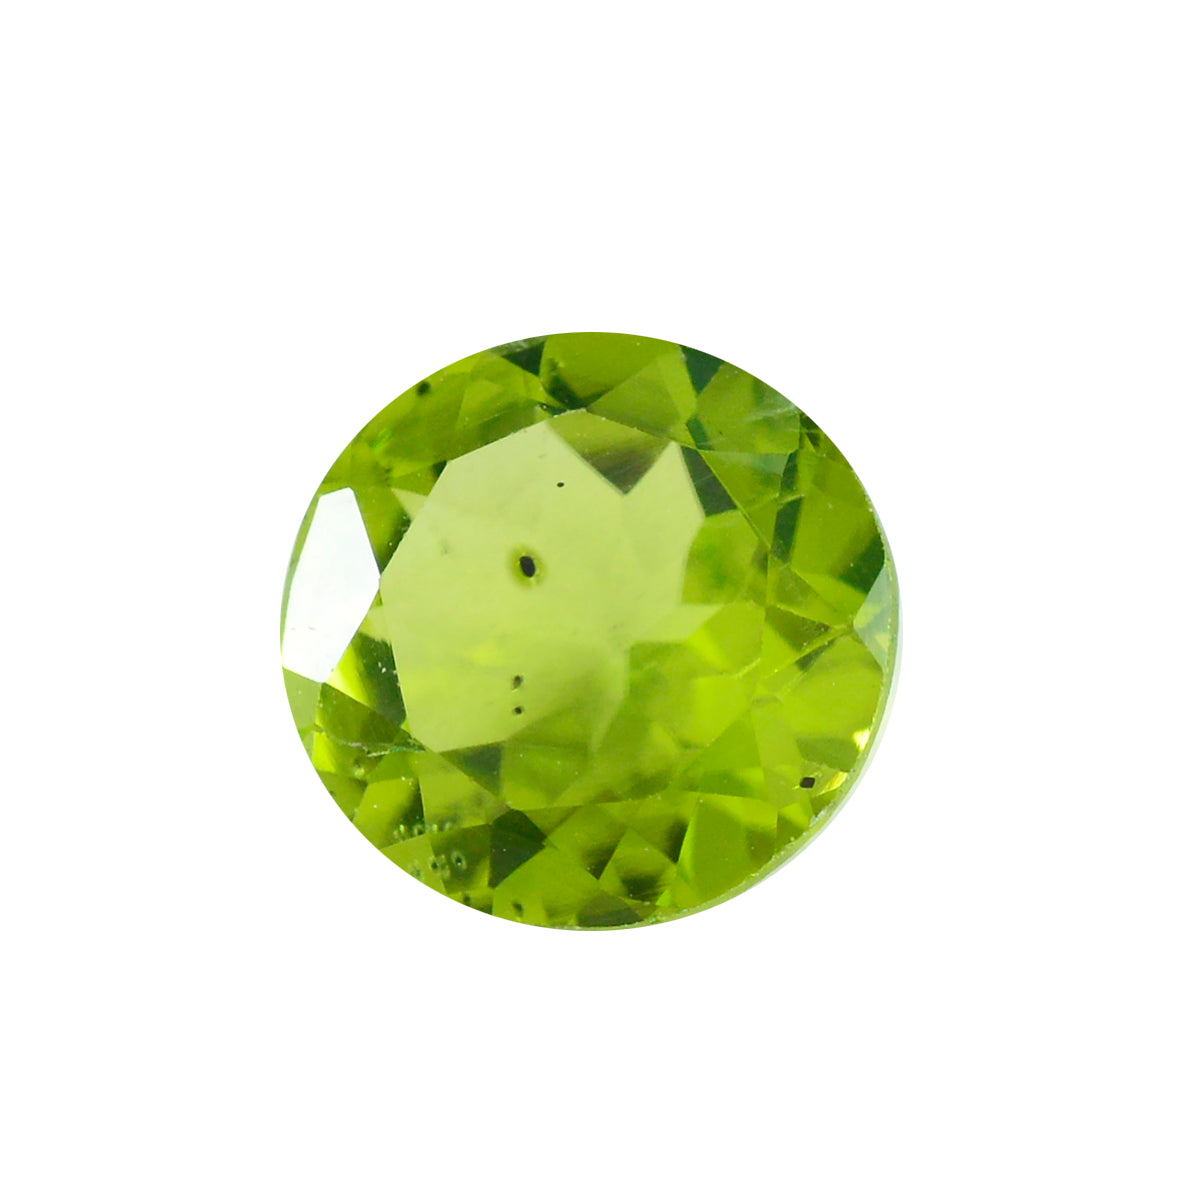 Riyogems 1 pièce péridot vert véritable à facettes 15x15mm forme ronde jolie pierre précieuse en vrac de qualité